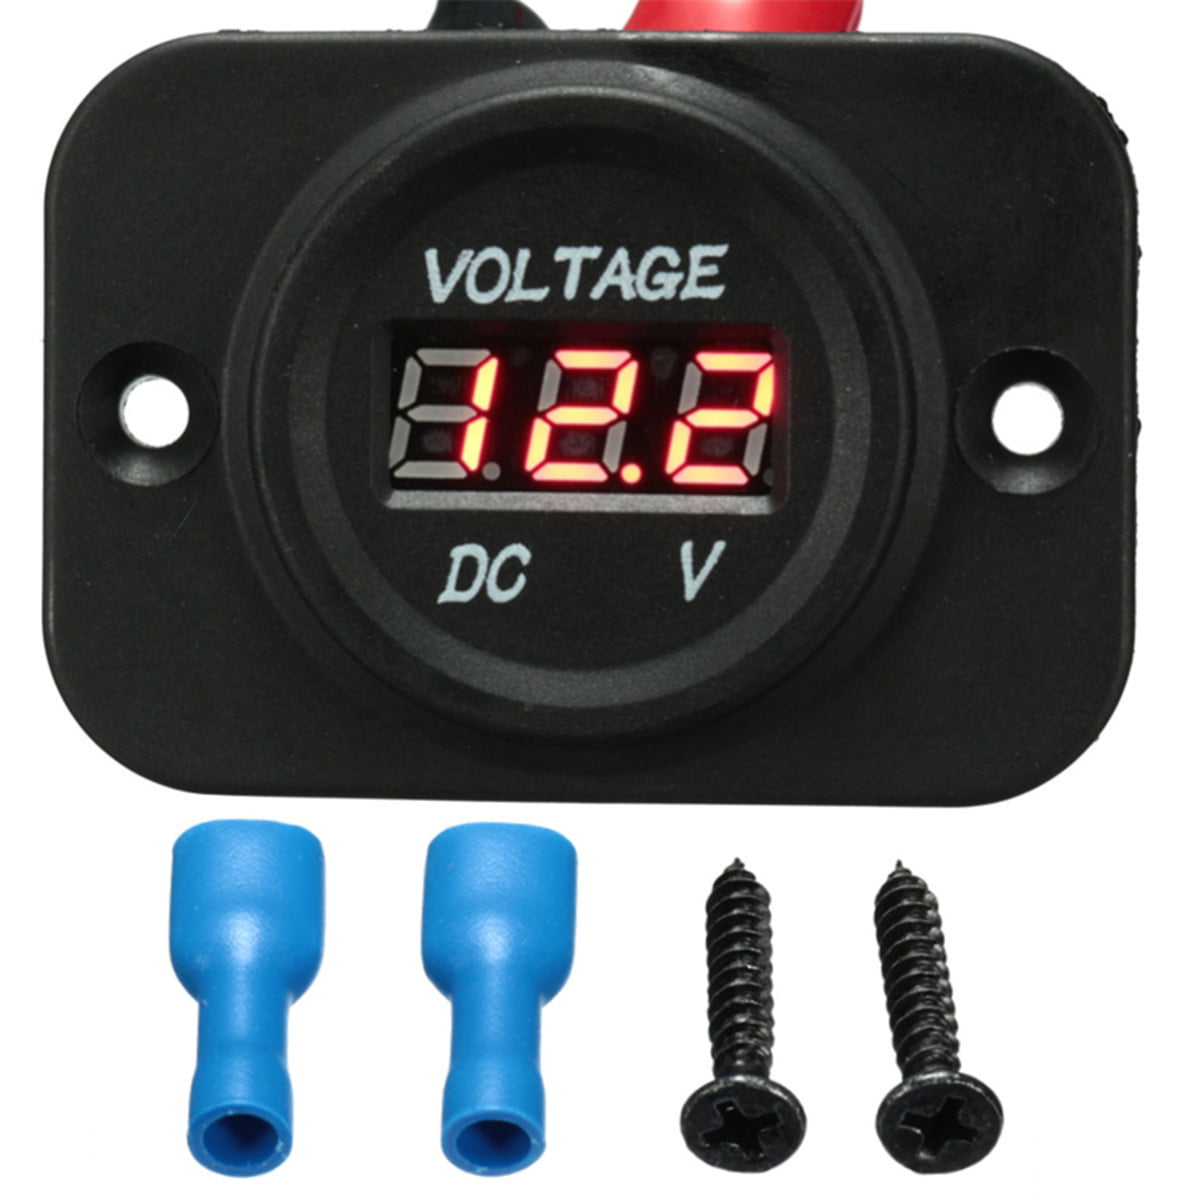 12-24V Car Van Boat LED Digital Voltage Meter Gauge Display Voltmeter Waterproof